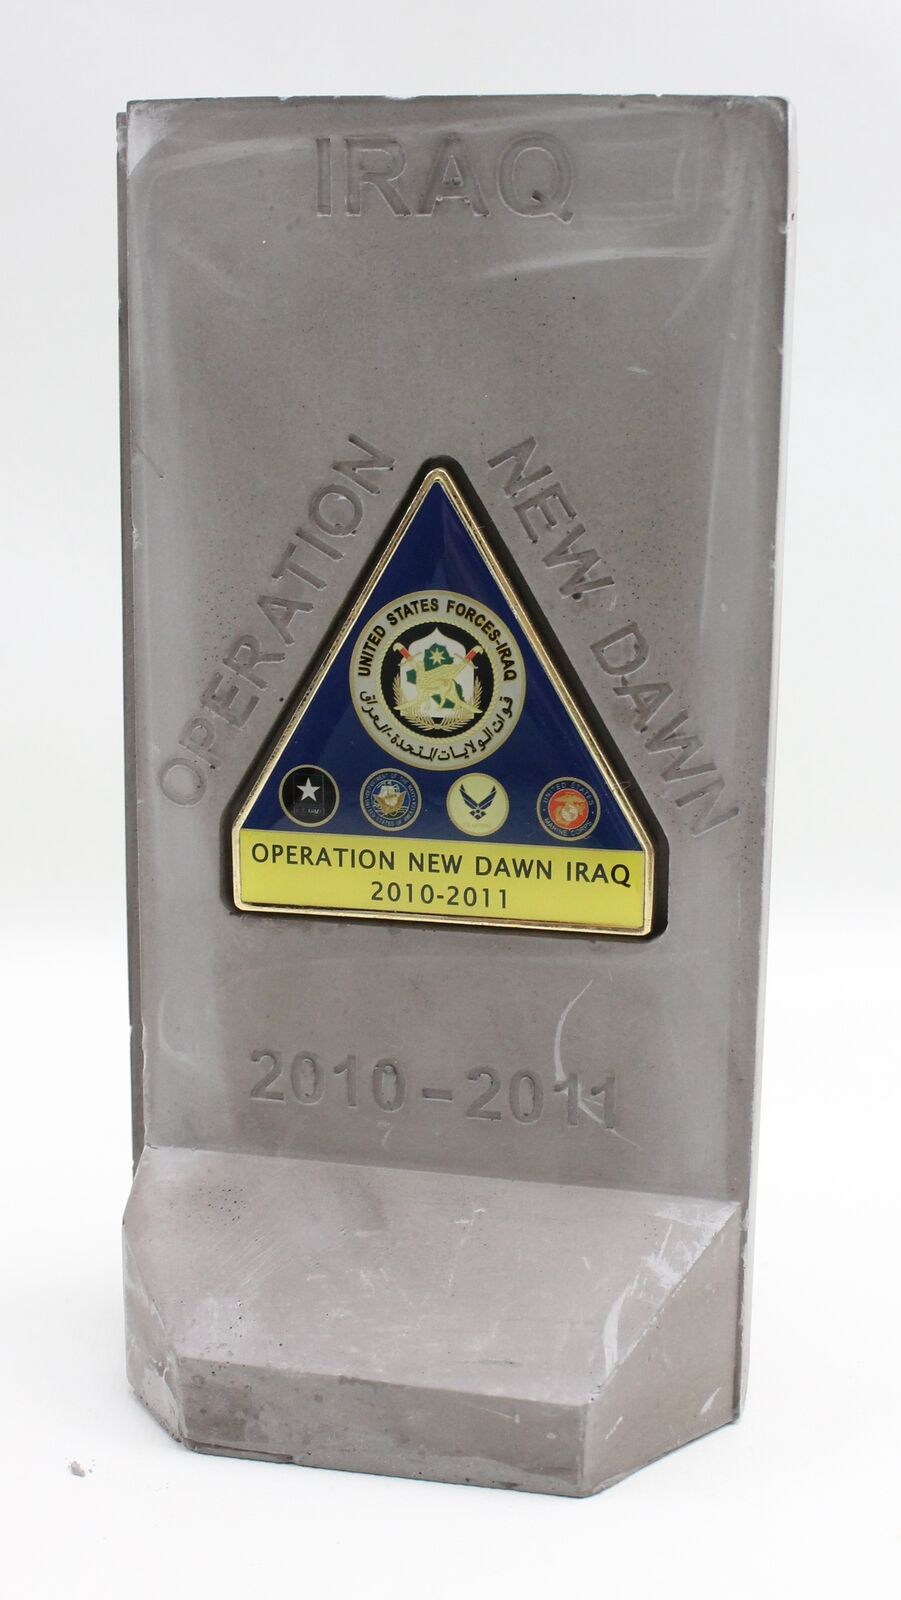 Iraq Operation New Dawn T Wall U.S. Forces Iraq Challenge Coin 2010-2011